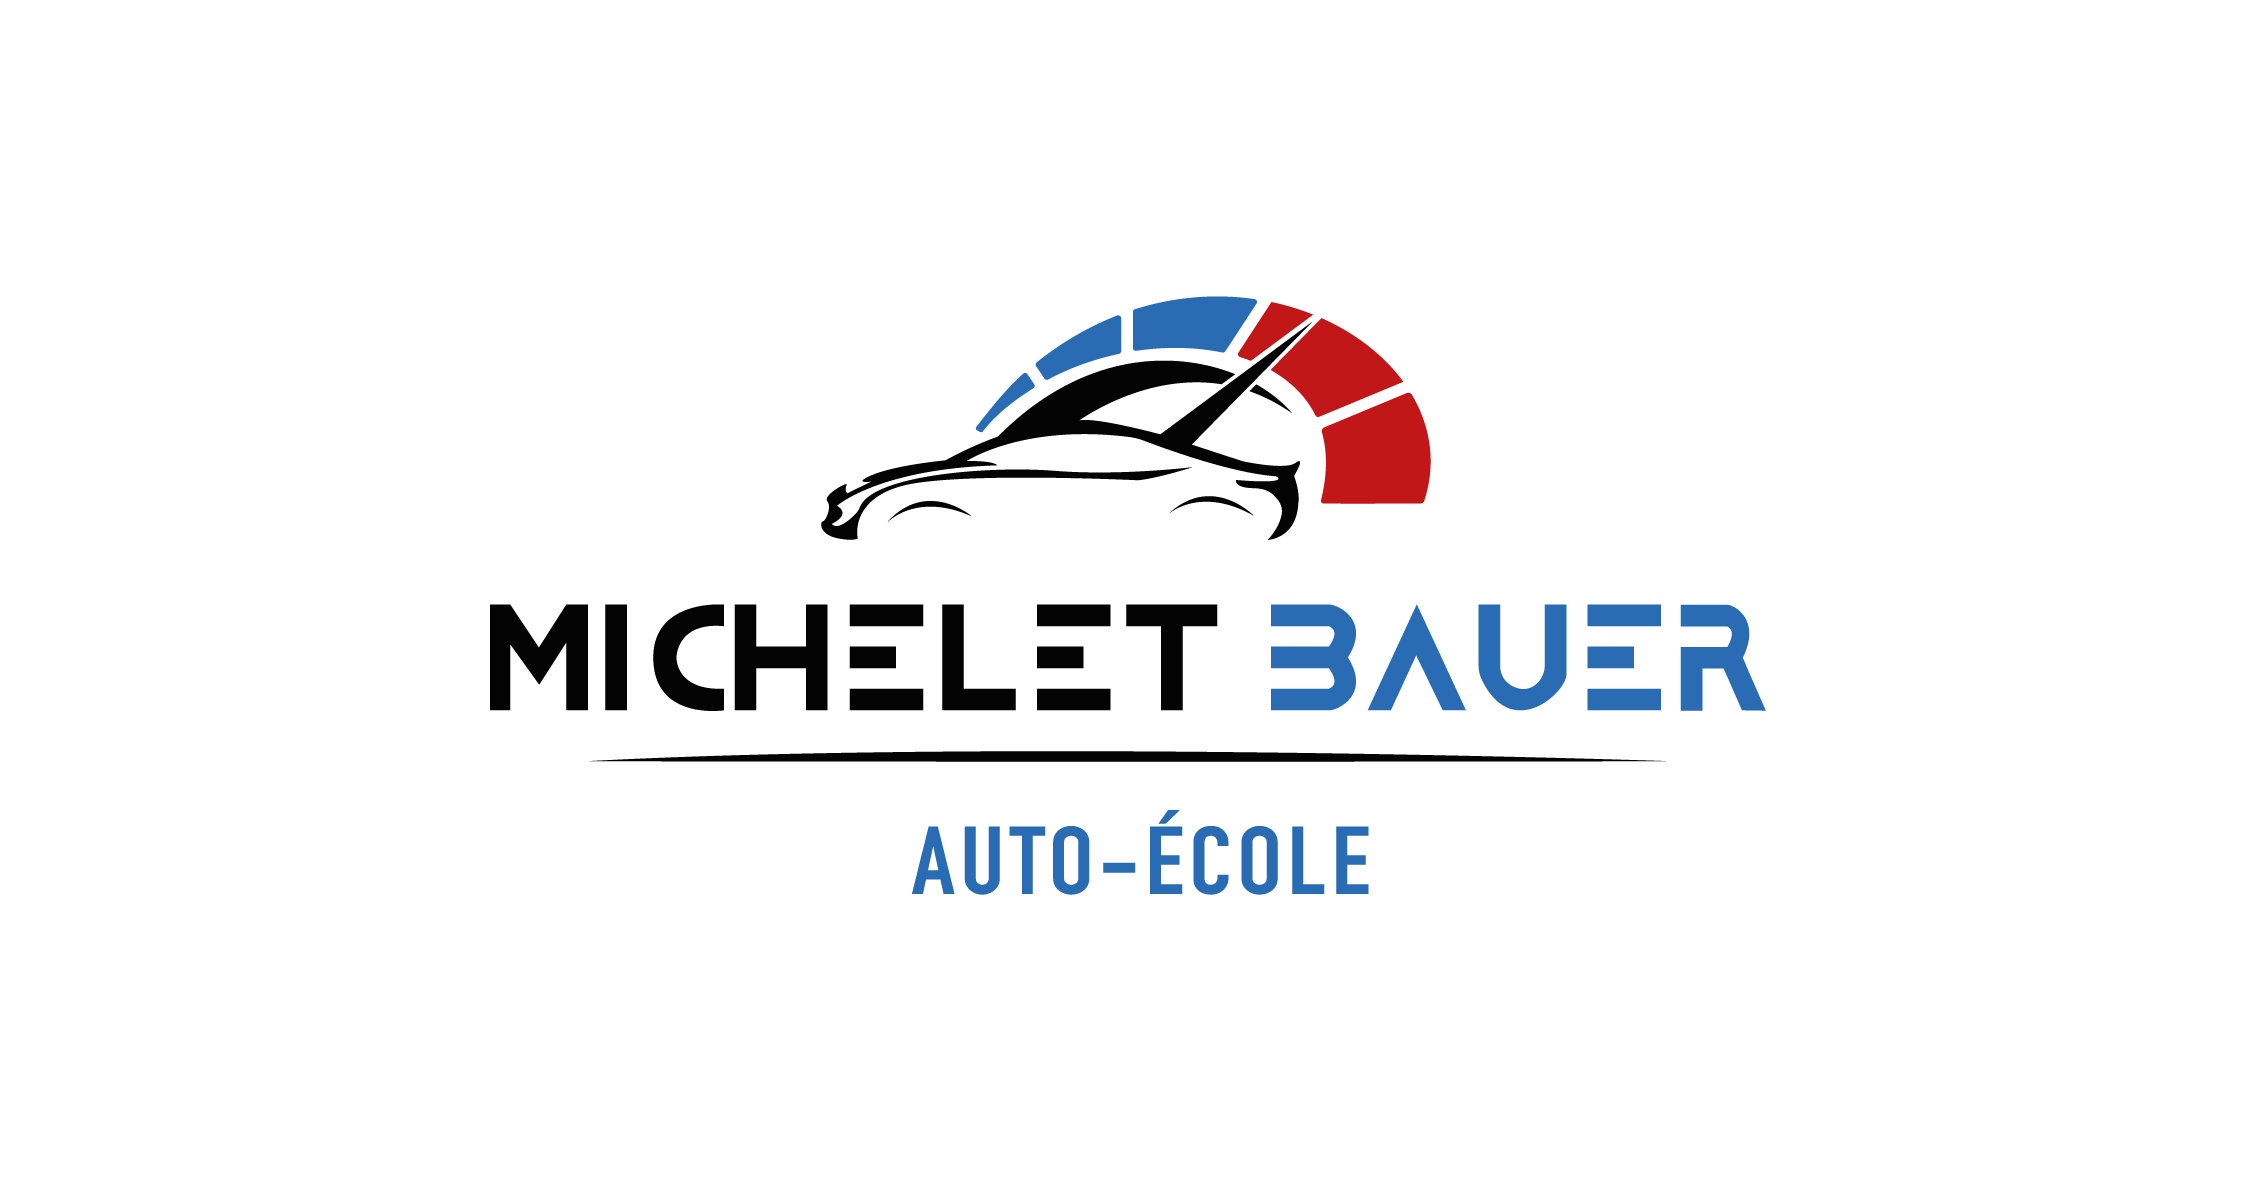 Auto-école Michelet Bauer